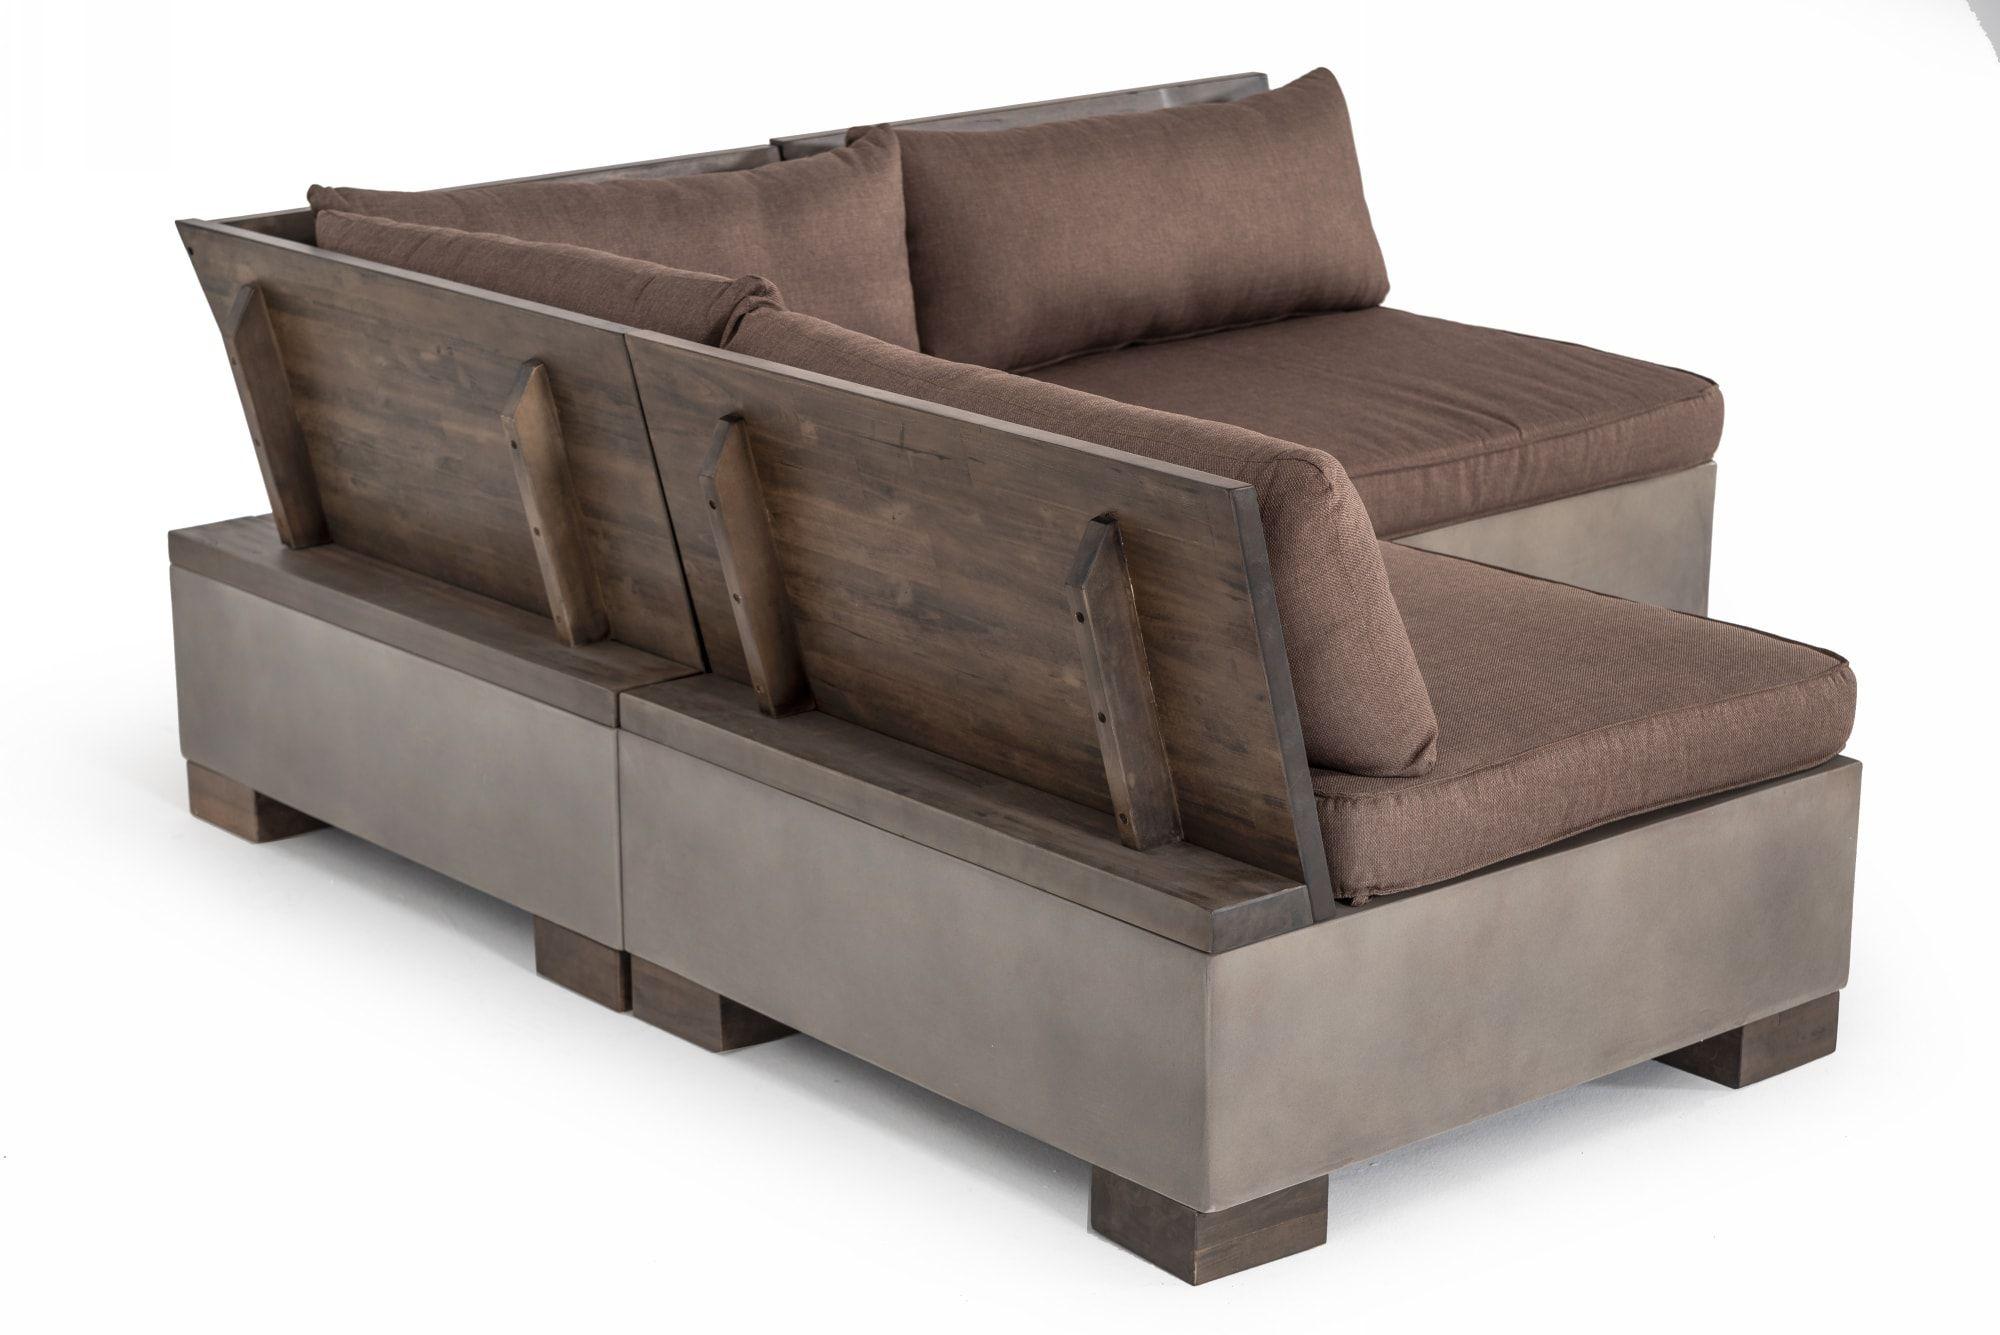 

    
VIG Furniture Modrest Delaware Modular Sectional Sofa Dark Tan/Brown VGLB-RIVI-REC-SET1
